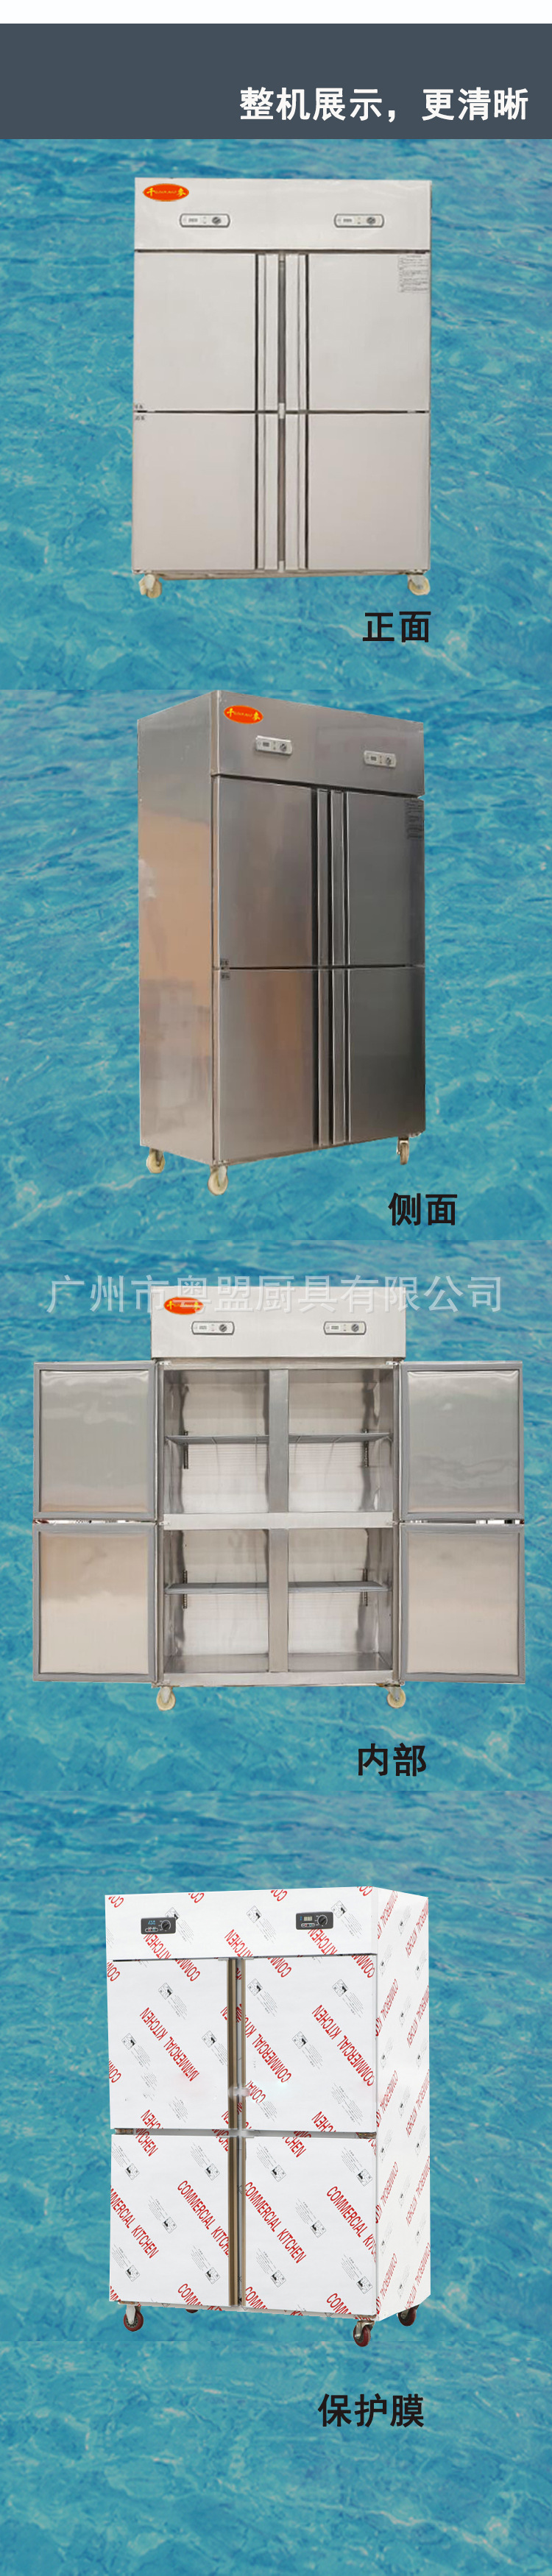 供应千麦四门冰箱 商用冰柜 厨房设备 冷藏冷冻双机双温冷柜